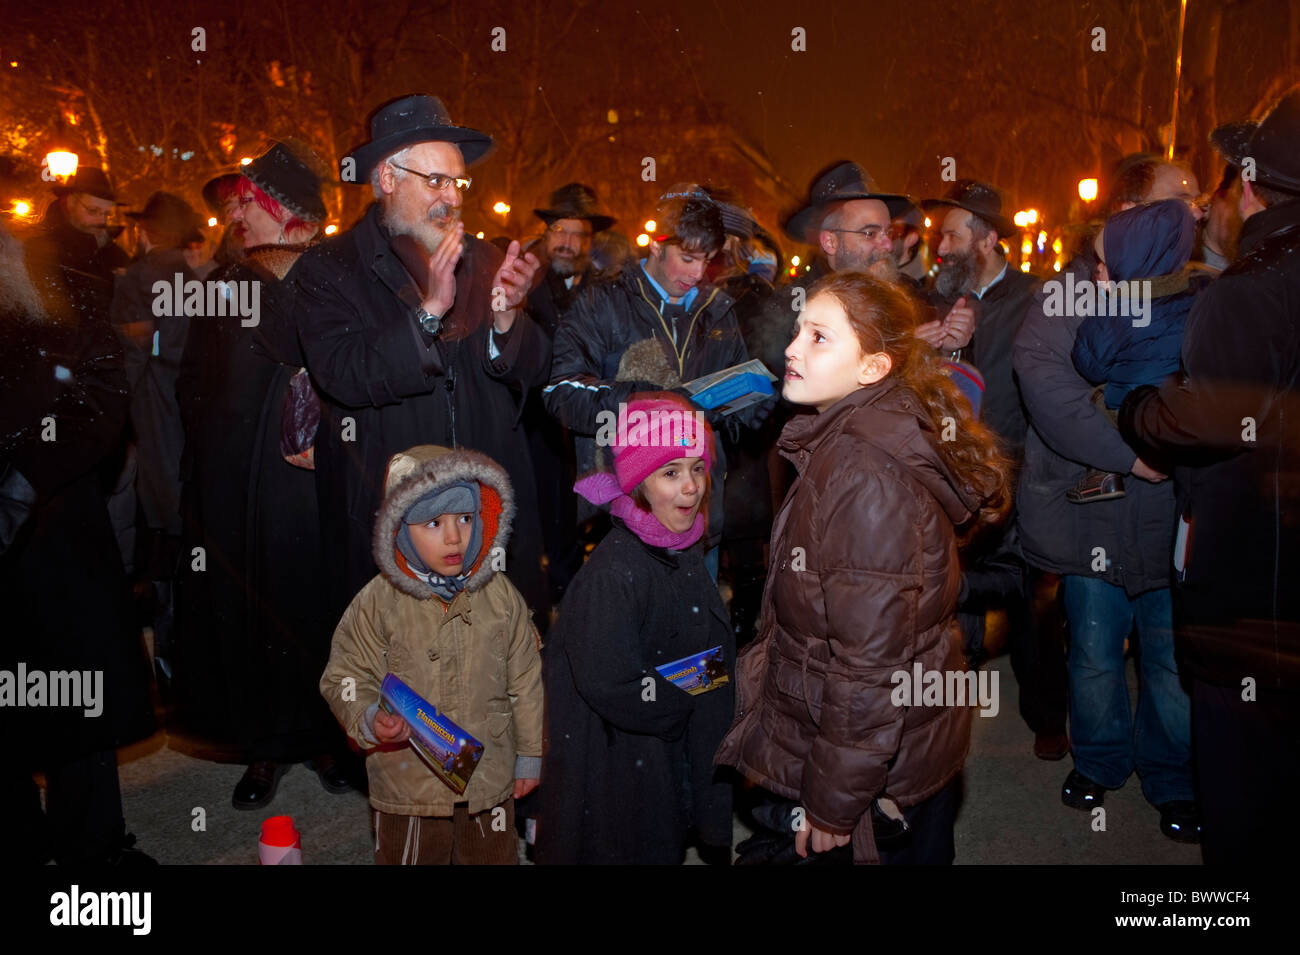 Paris, France, foule nombreuse, dans la rue, familles juives célébrant la fête religieuse annuelle, Hanukkah, cérémonie d'éclairage des bougies, nuit, vieilles traditions juives, famille multigénérationnelle, juifs hassidiques Banque D'Images